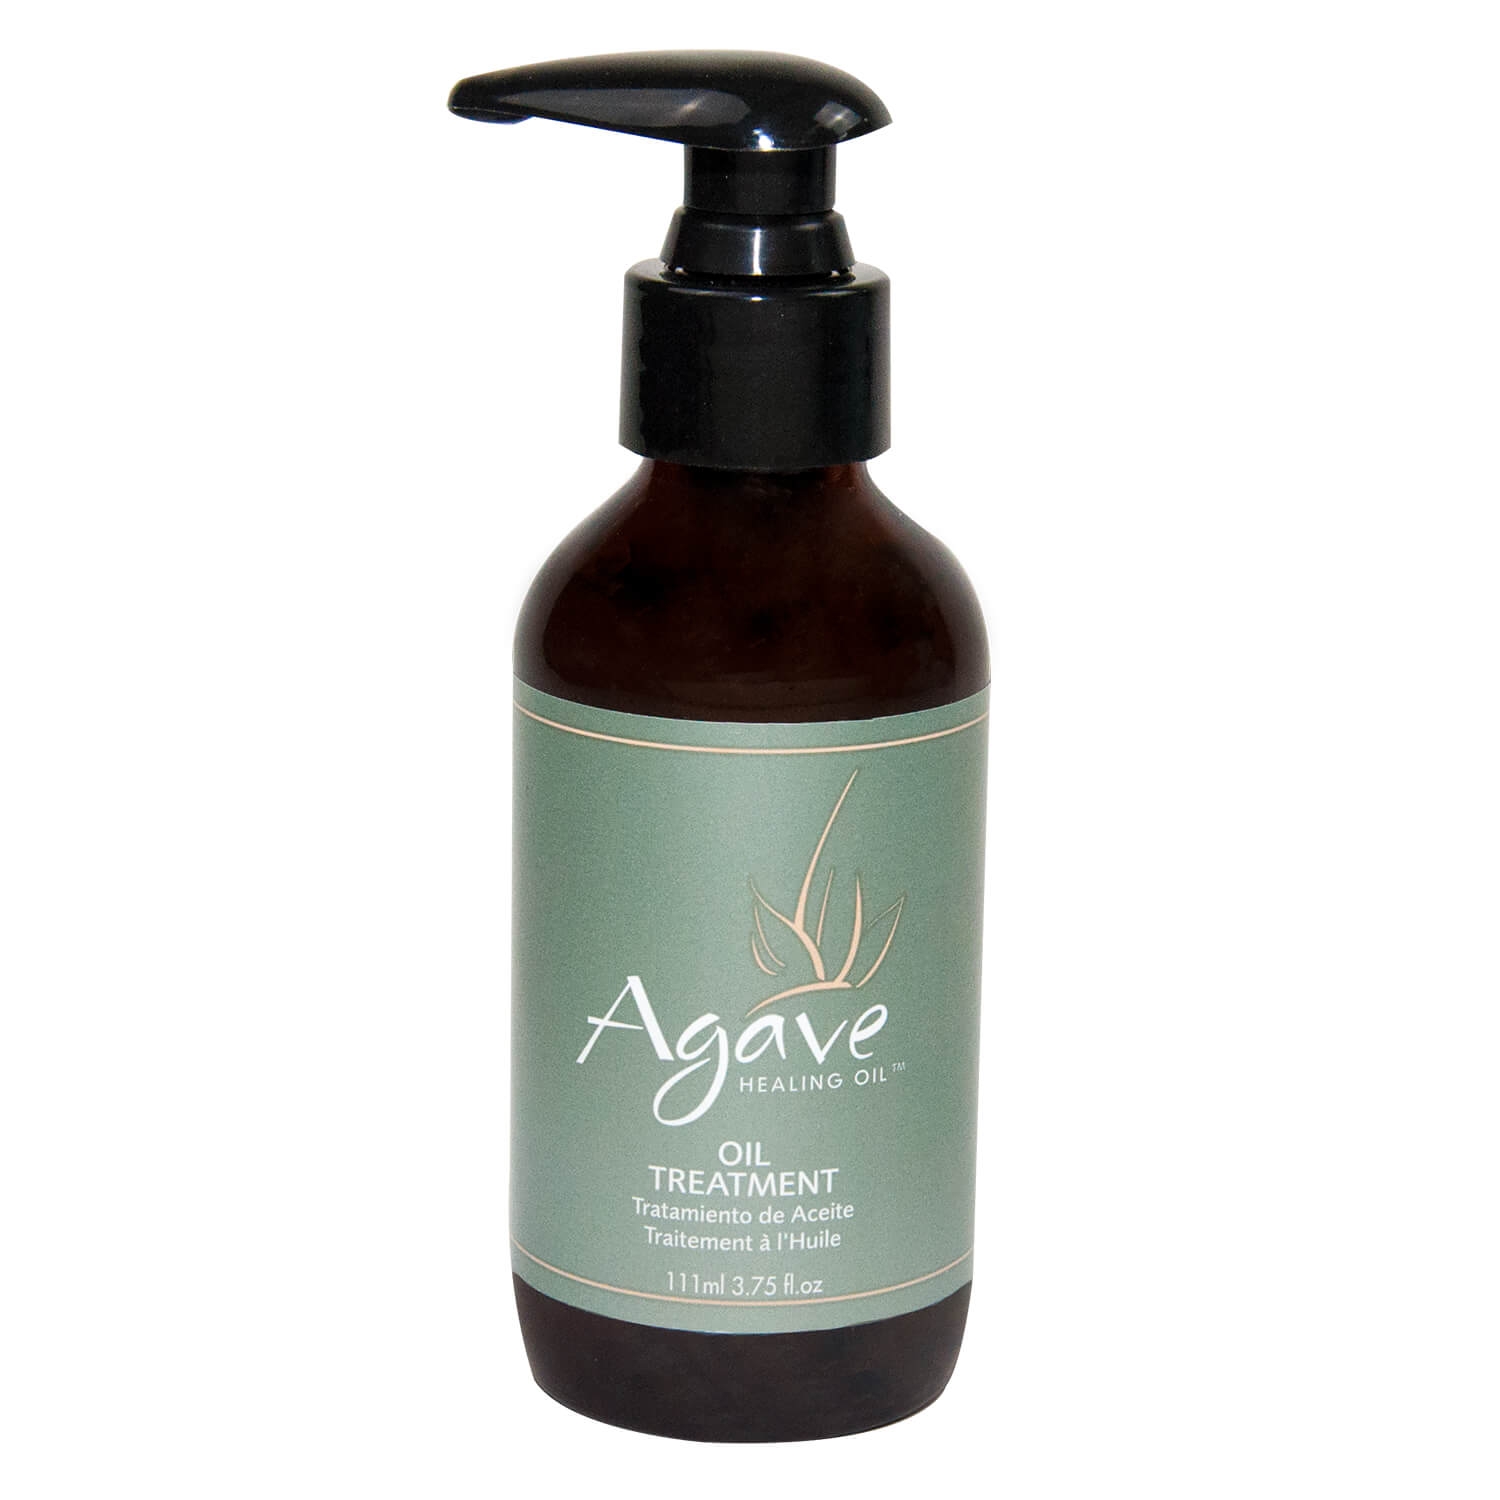 Produktbild von Agave - Healing Oil